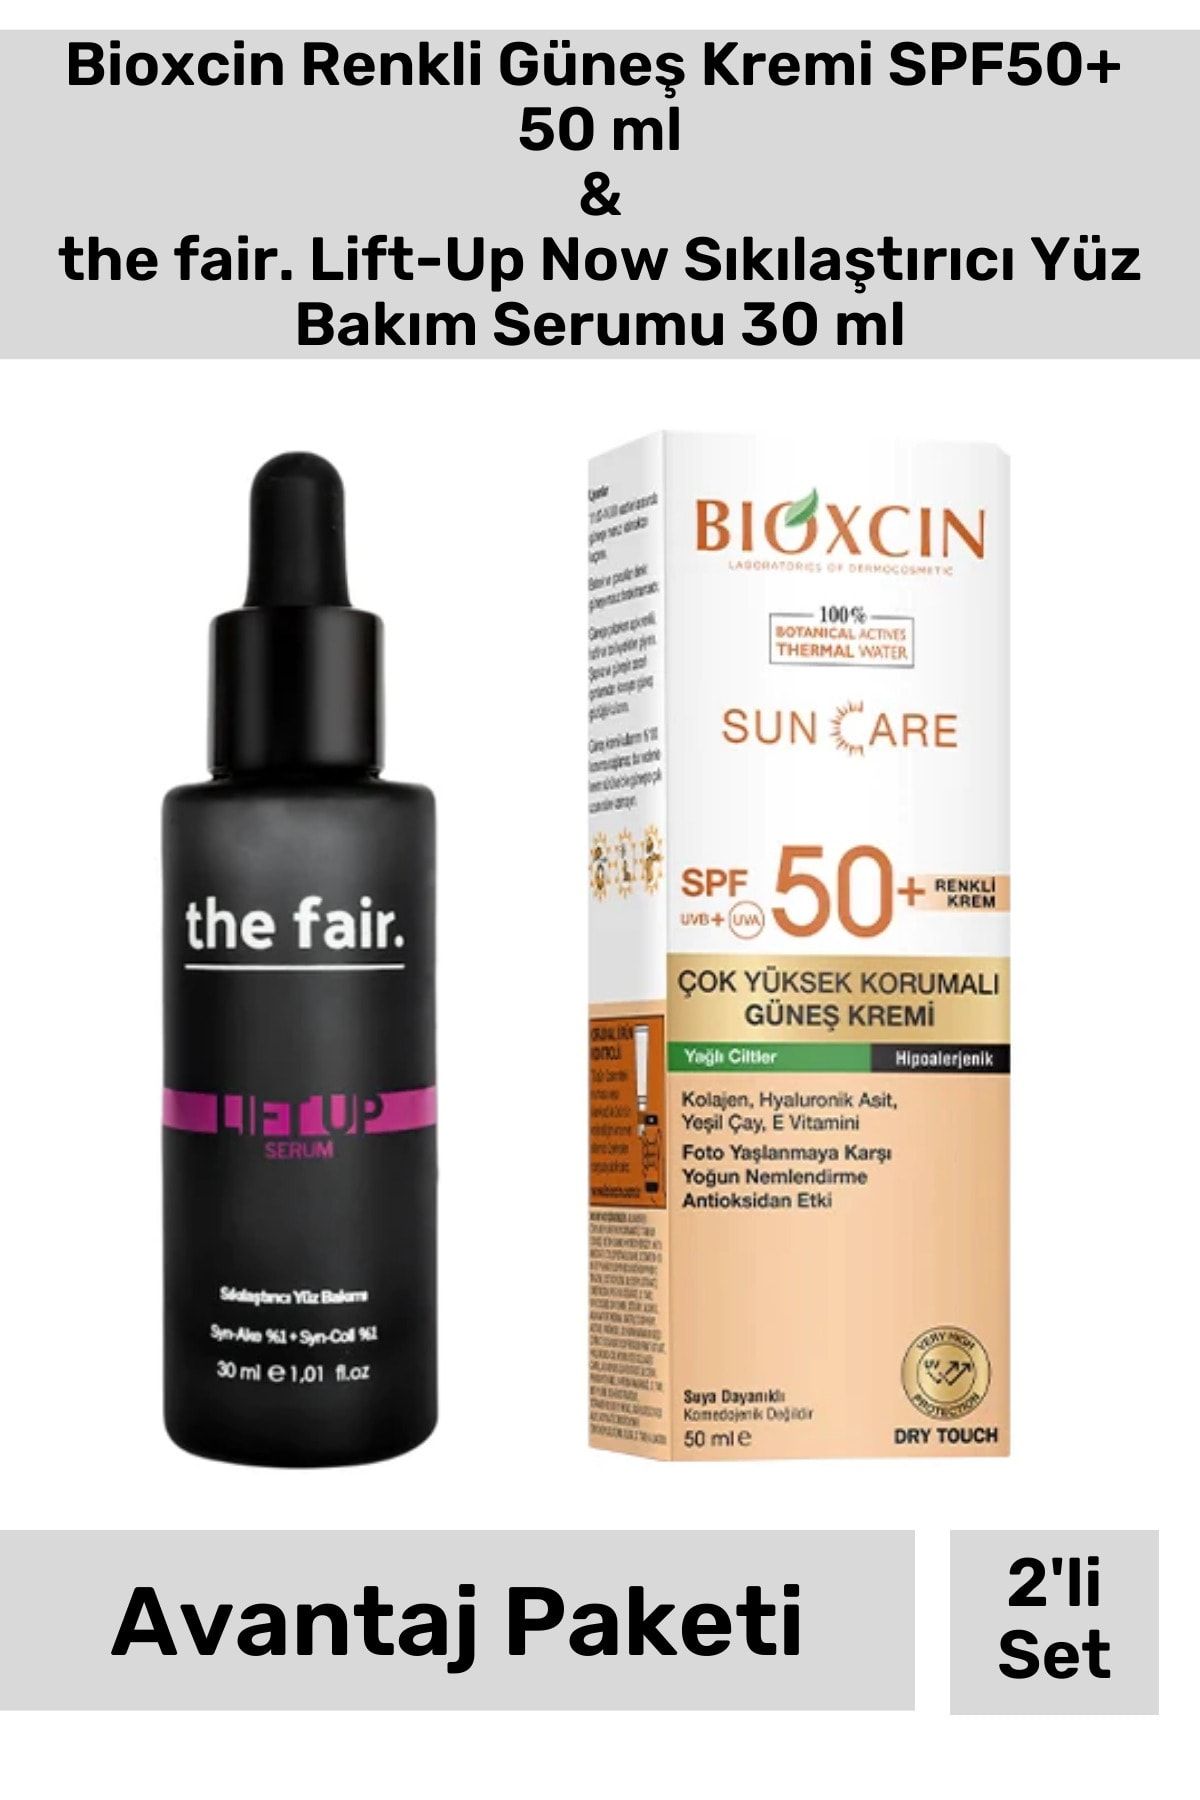 Bioxcin Renkli Güneş Kremi SPF50+ 50 ml & the fair. Lift-Up Now Sıkılaştırıcı Yüz Bakım Serumu 30 ml